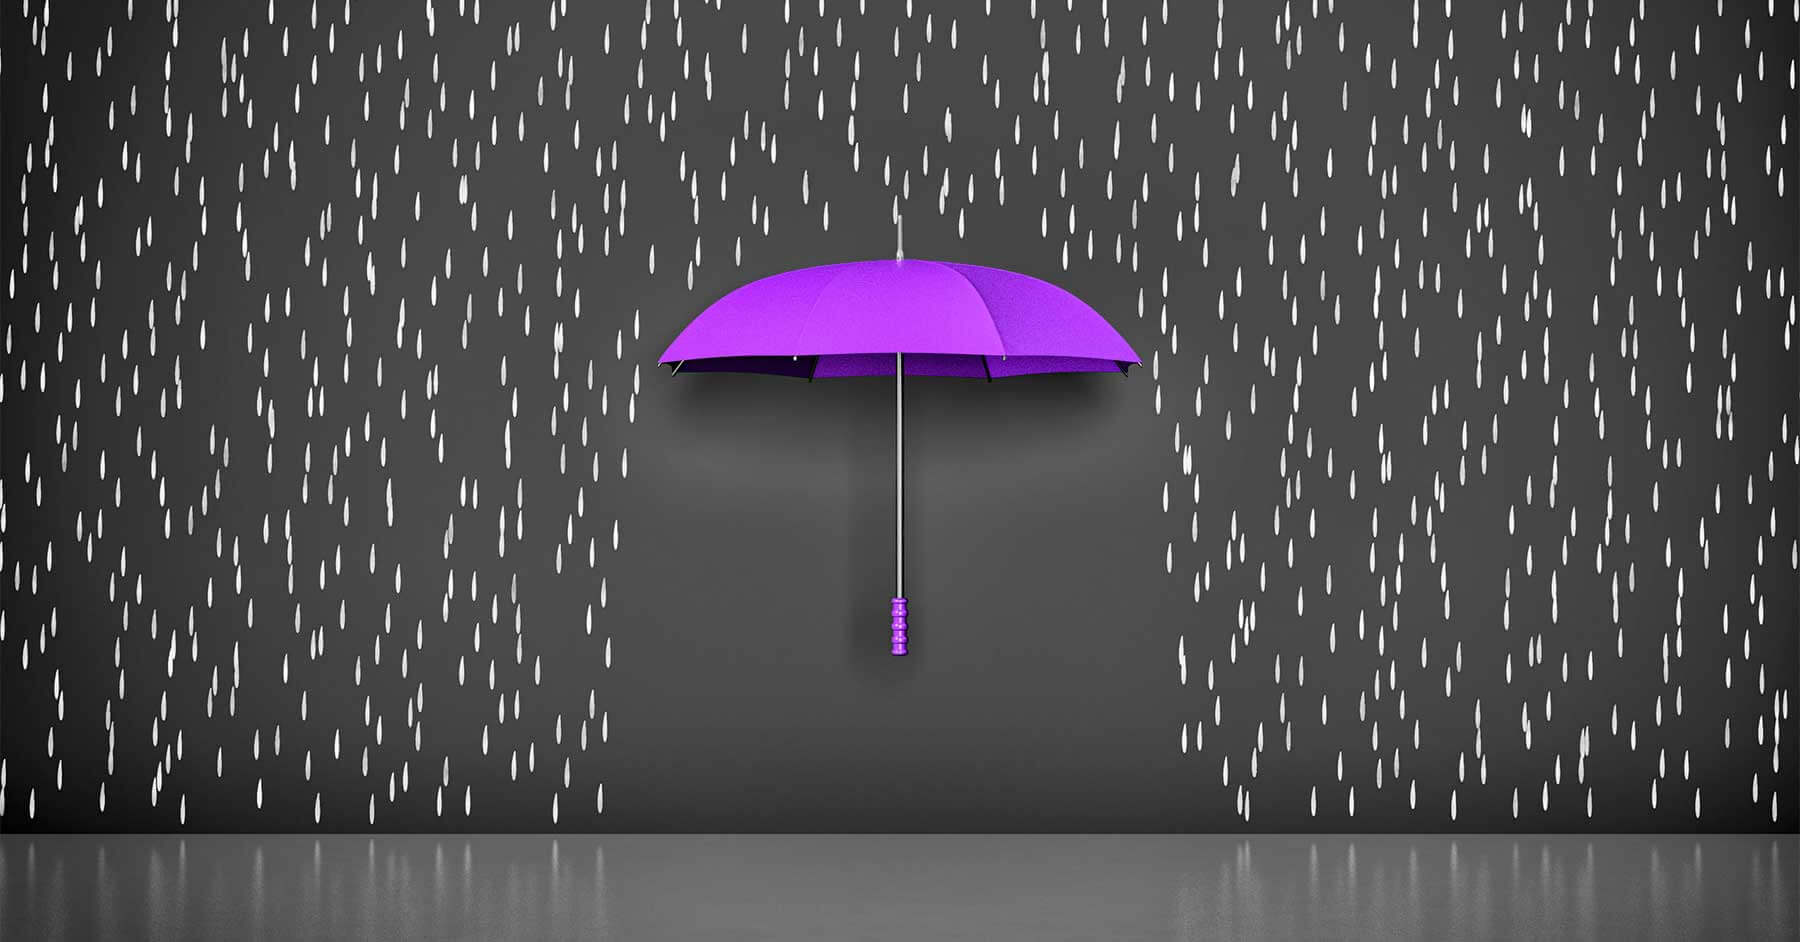 Abstract purple umbrella in the rain